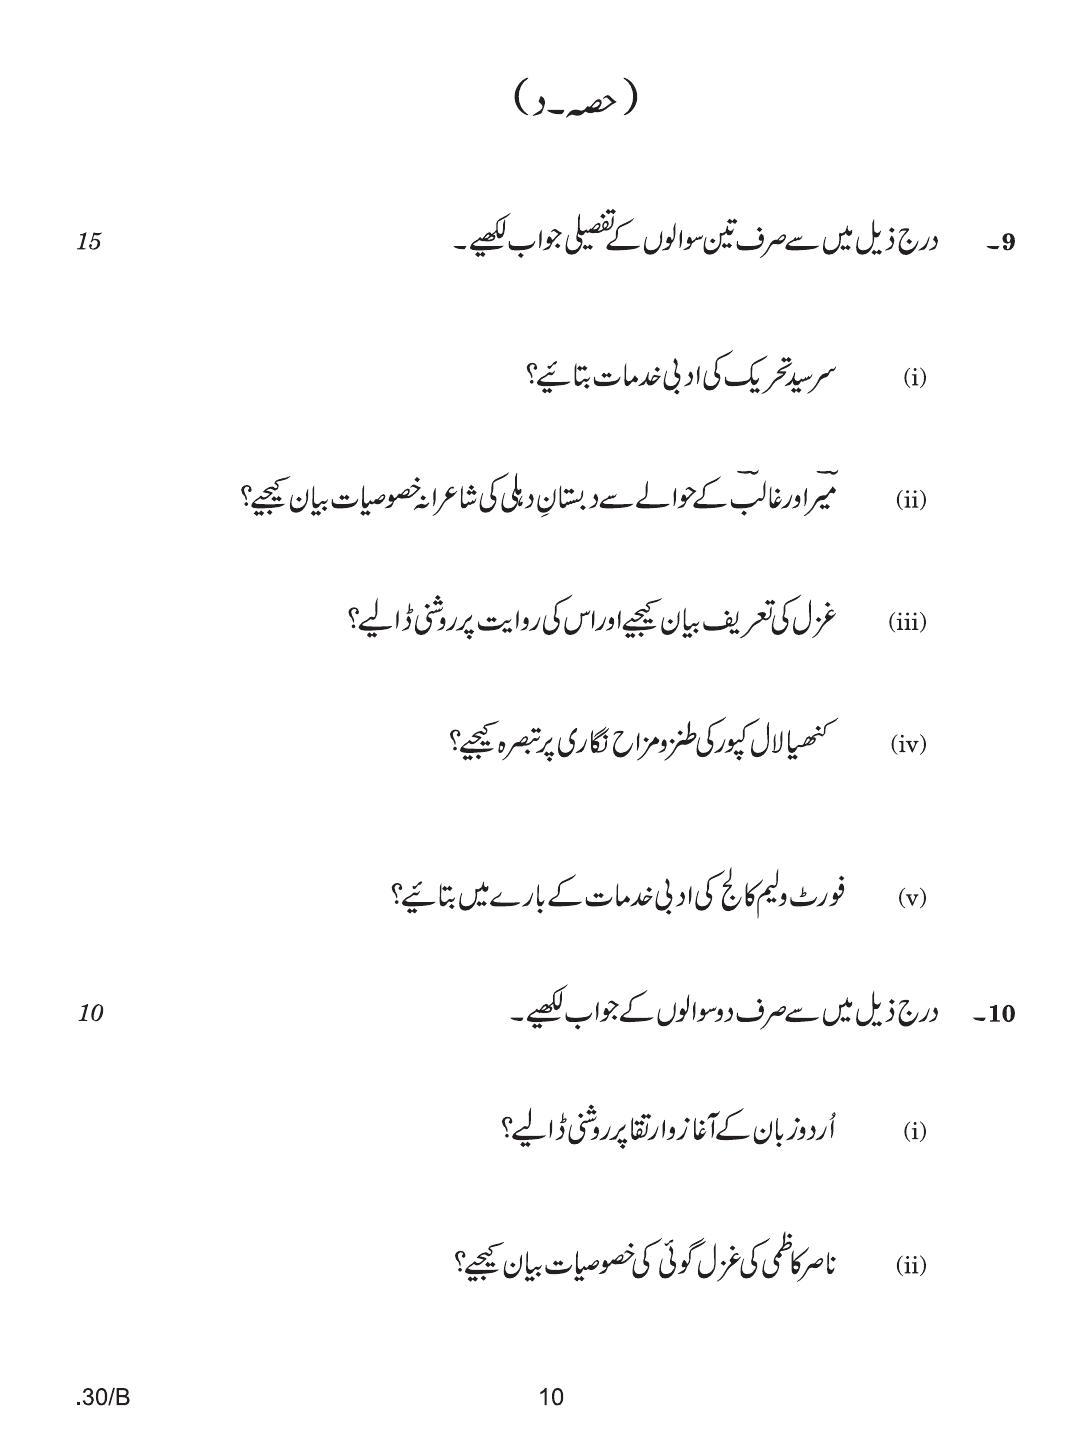 CBSE Class 12 Urdu Elective 2020 Compartment Question Paper - Page 10